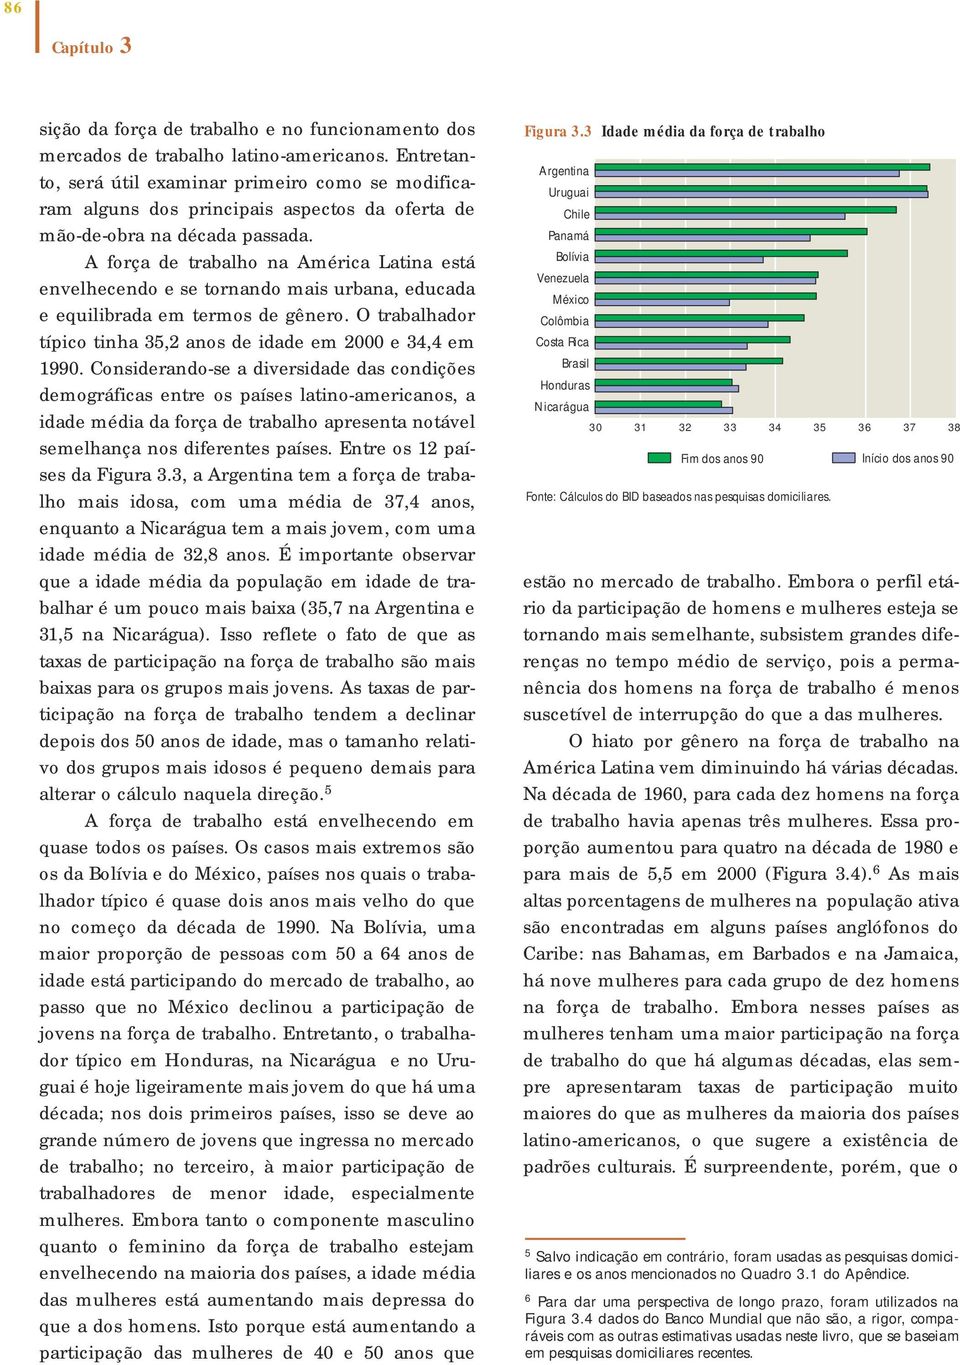 A força de trabalho na América Latina está envelhecendo e se tornando mais urbana, educada e equilibrada em termos de gênero. O trabalhador típico tinha 35,2 anos de idade em 2000 e 34,4 em 1990.